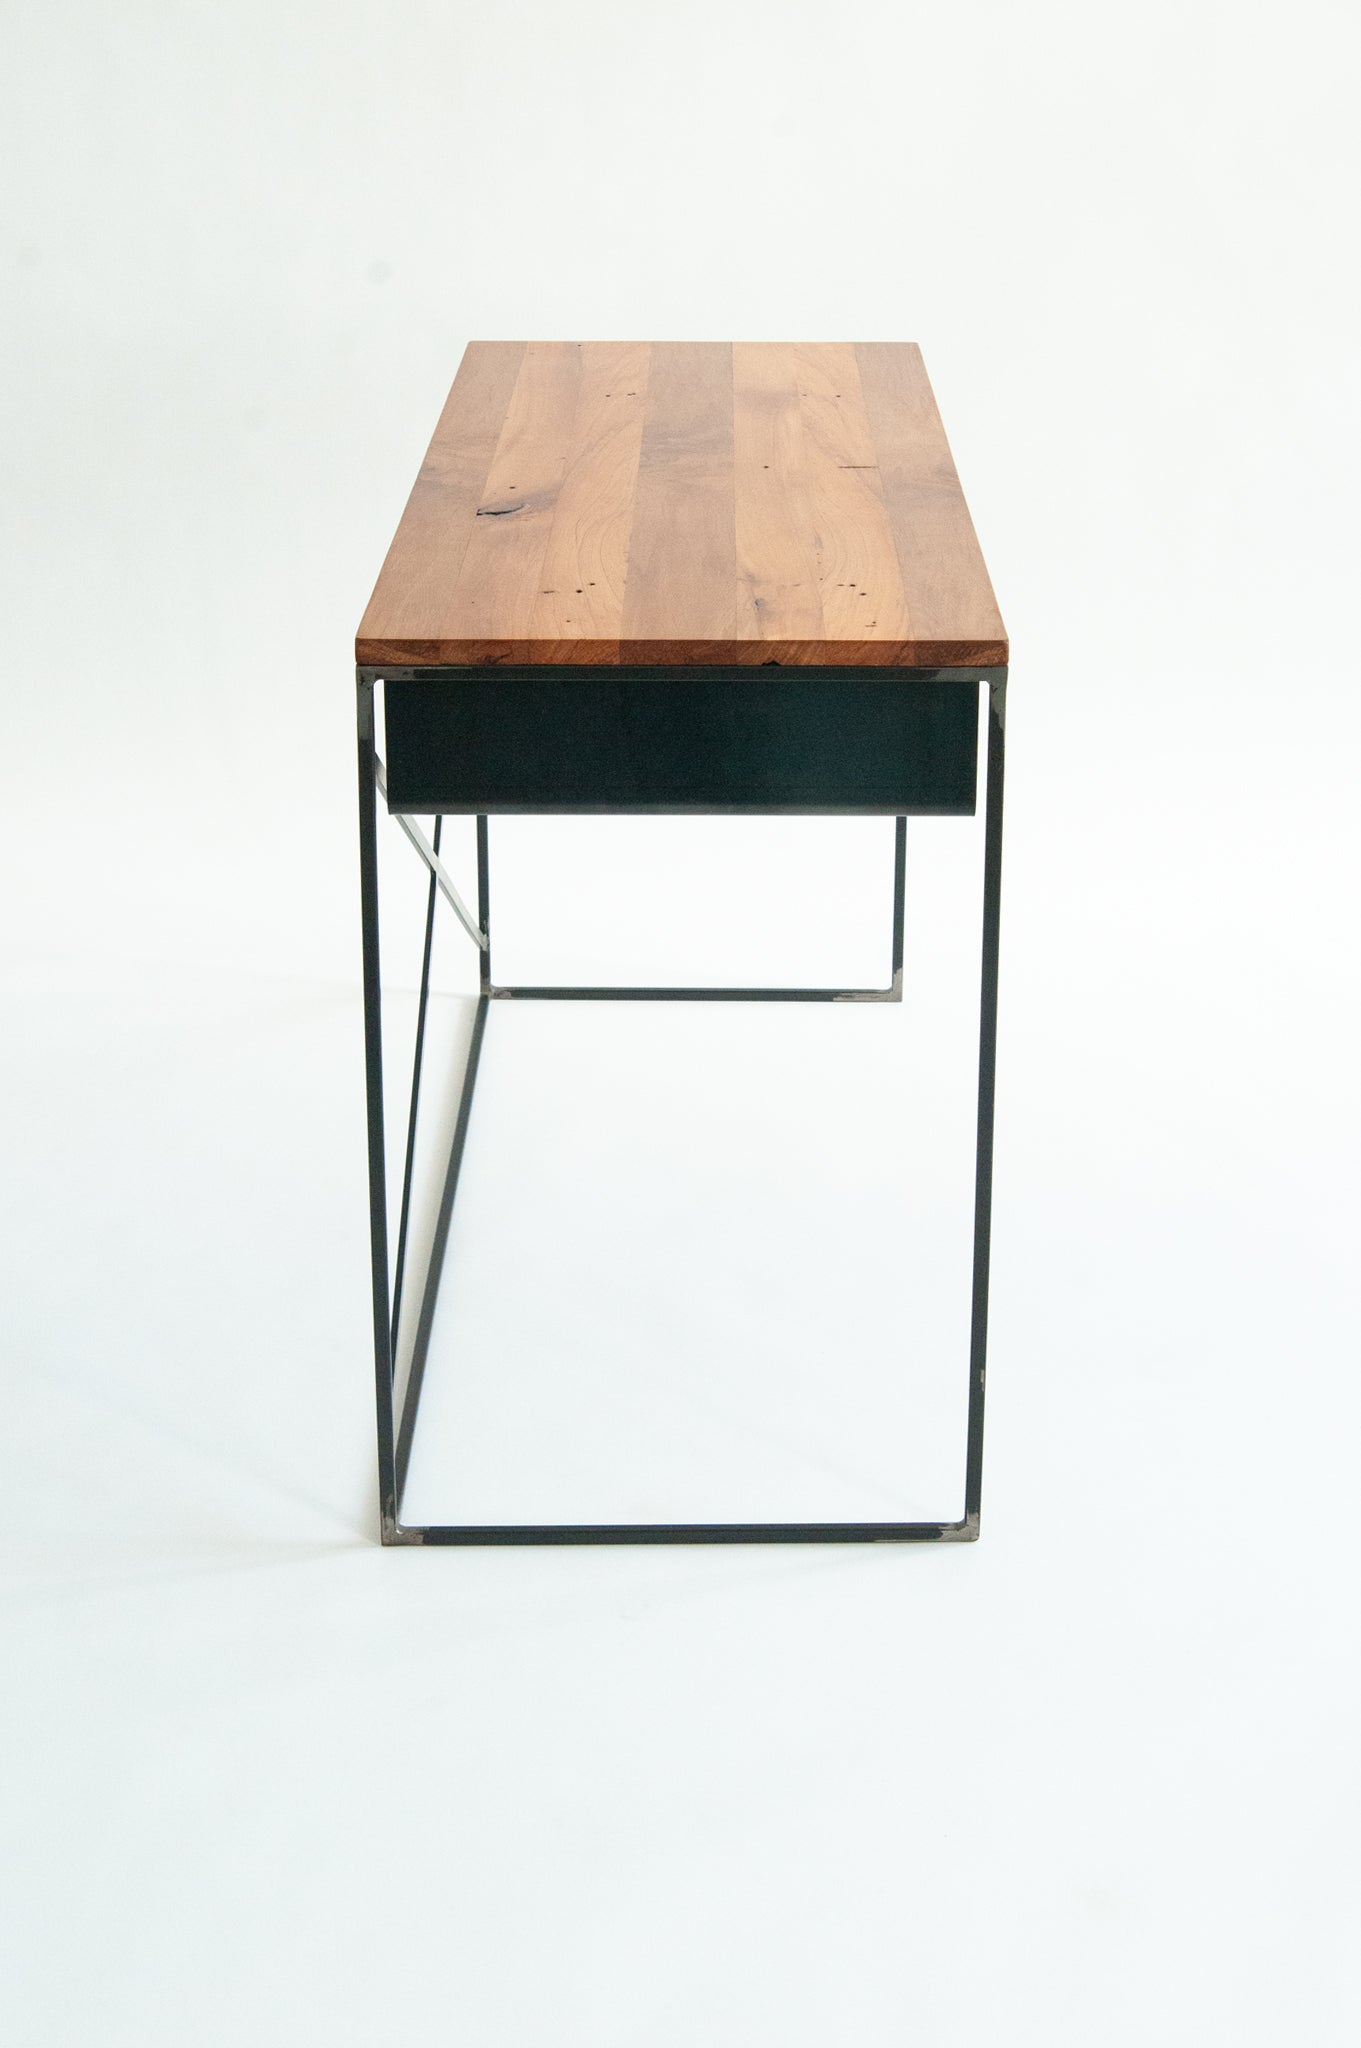 Axial Desk - Atelier Jones Design 